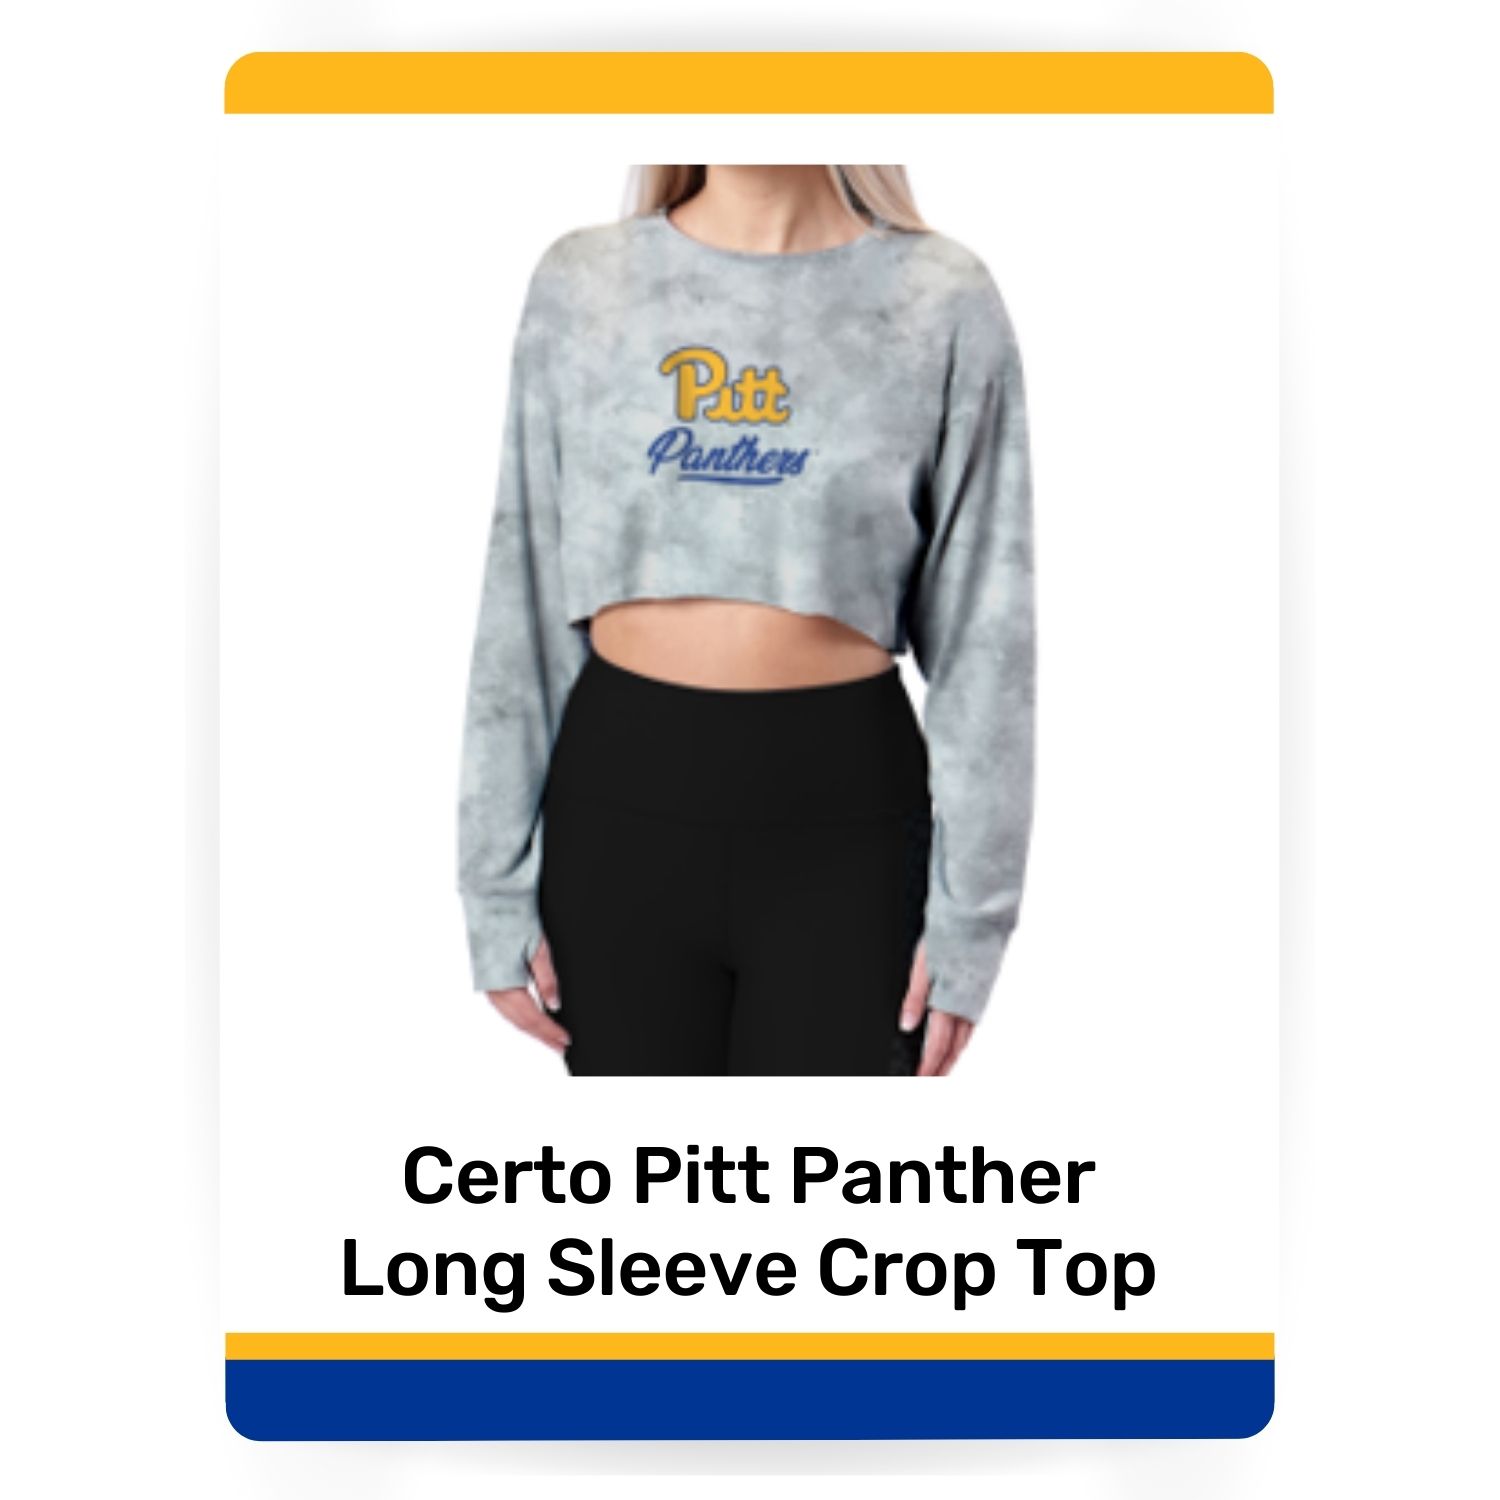 Certo Pitt Panther Long Sleeve Crop Top